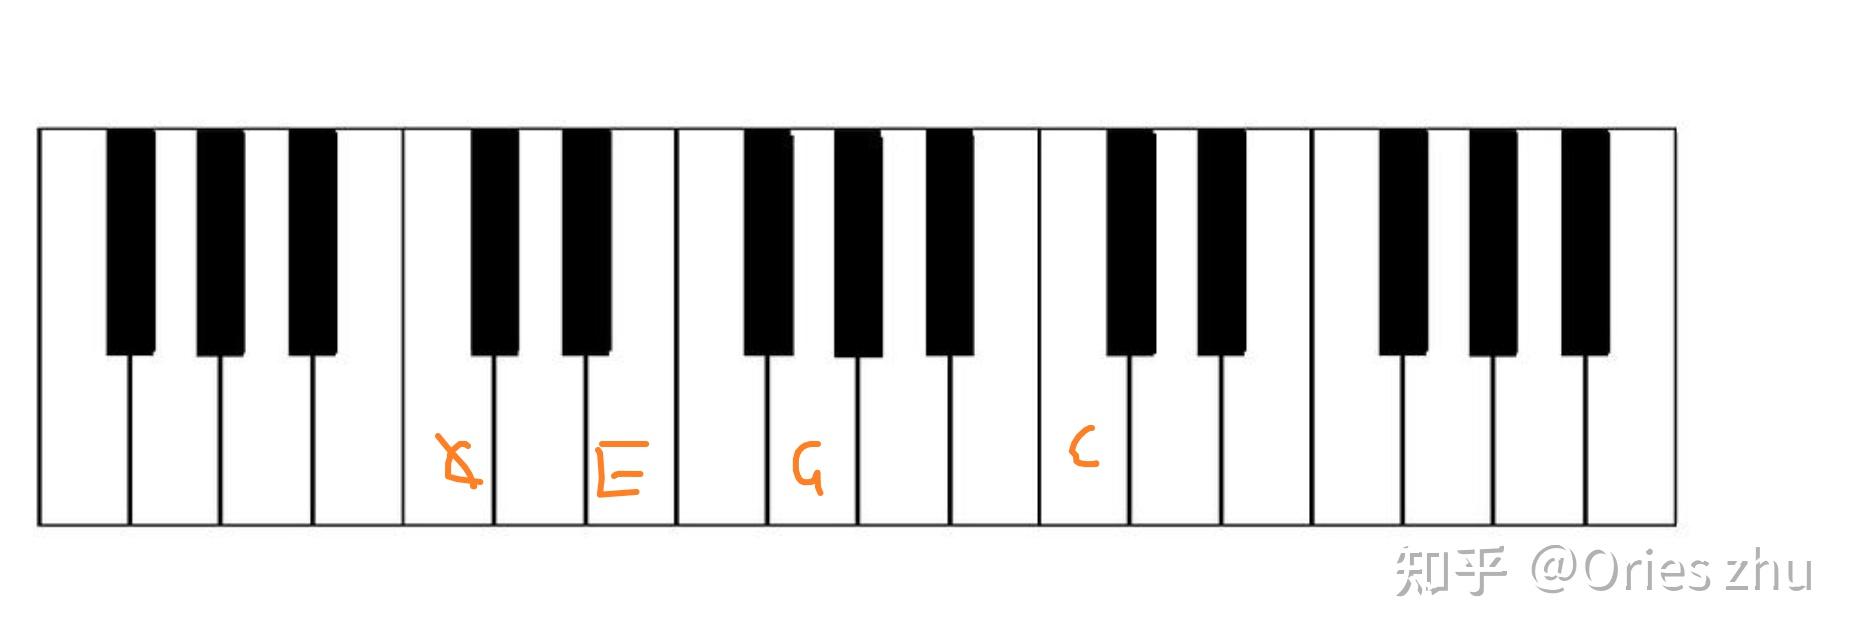 g大调三和弦转位图图片